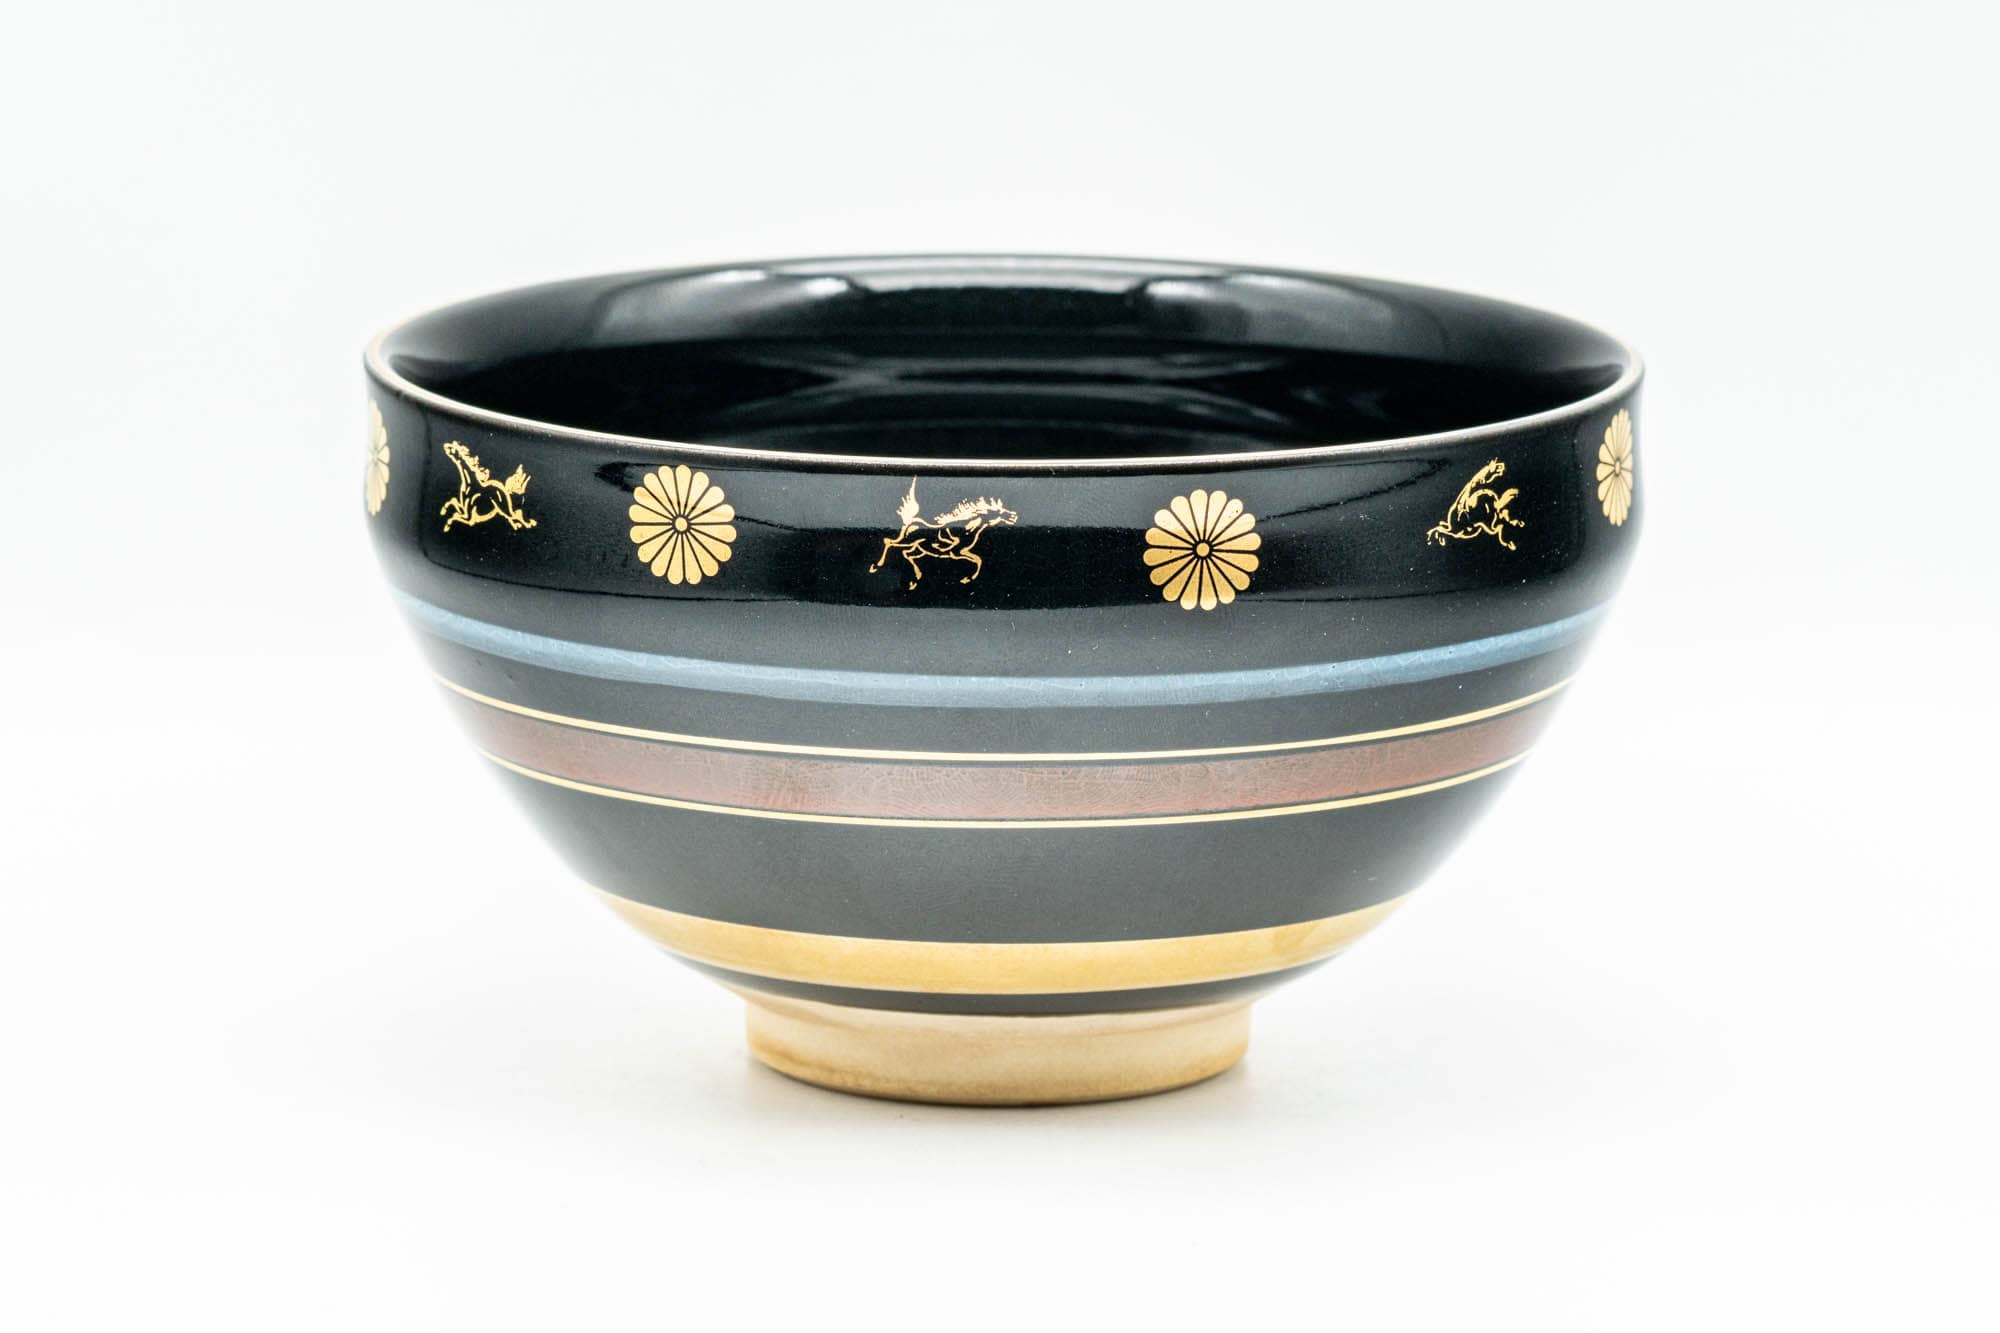 Japanese Matcha Bowl - 貴山 Kiyama - Black Gold Chrysanthemum Horses Kyo-yaki Chawan - 200ml